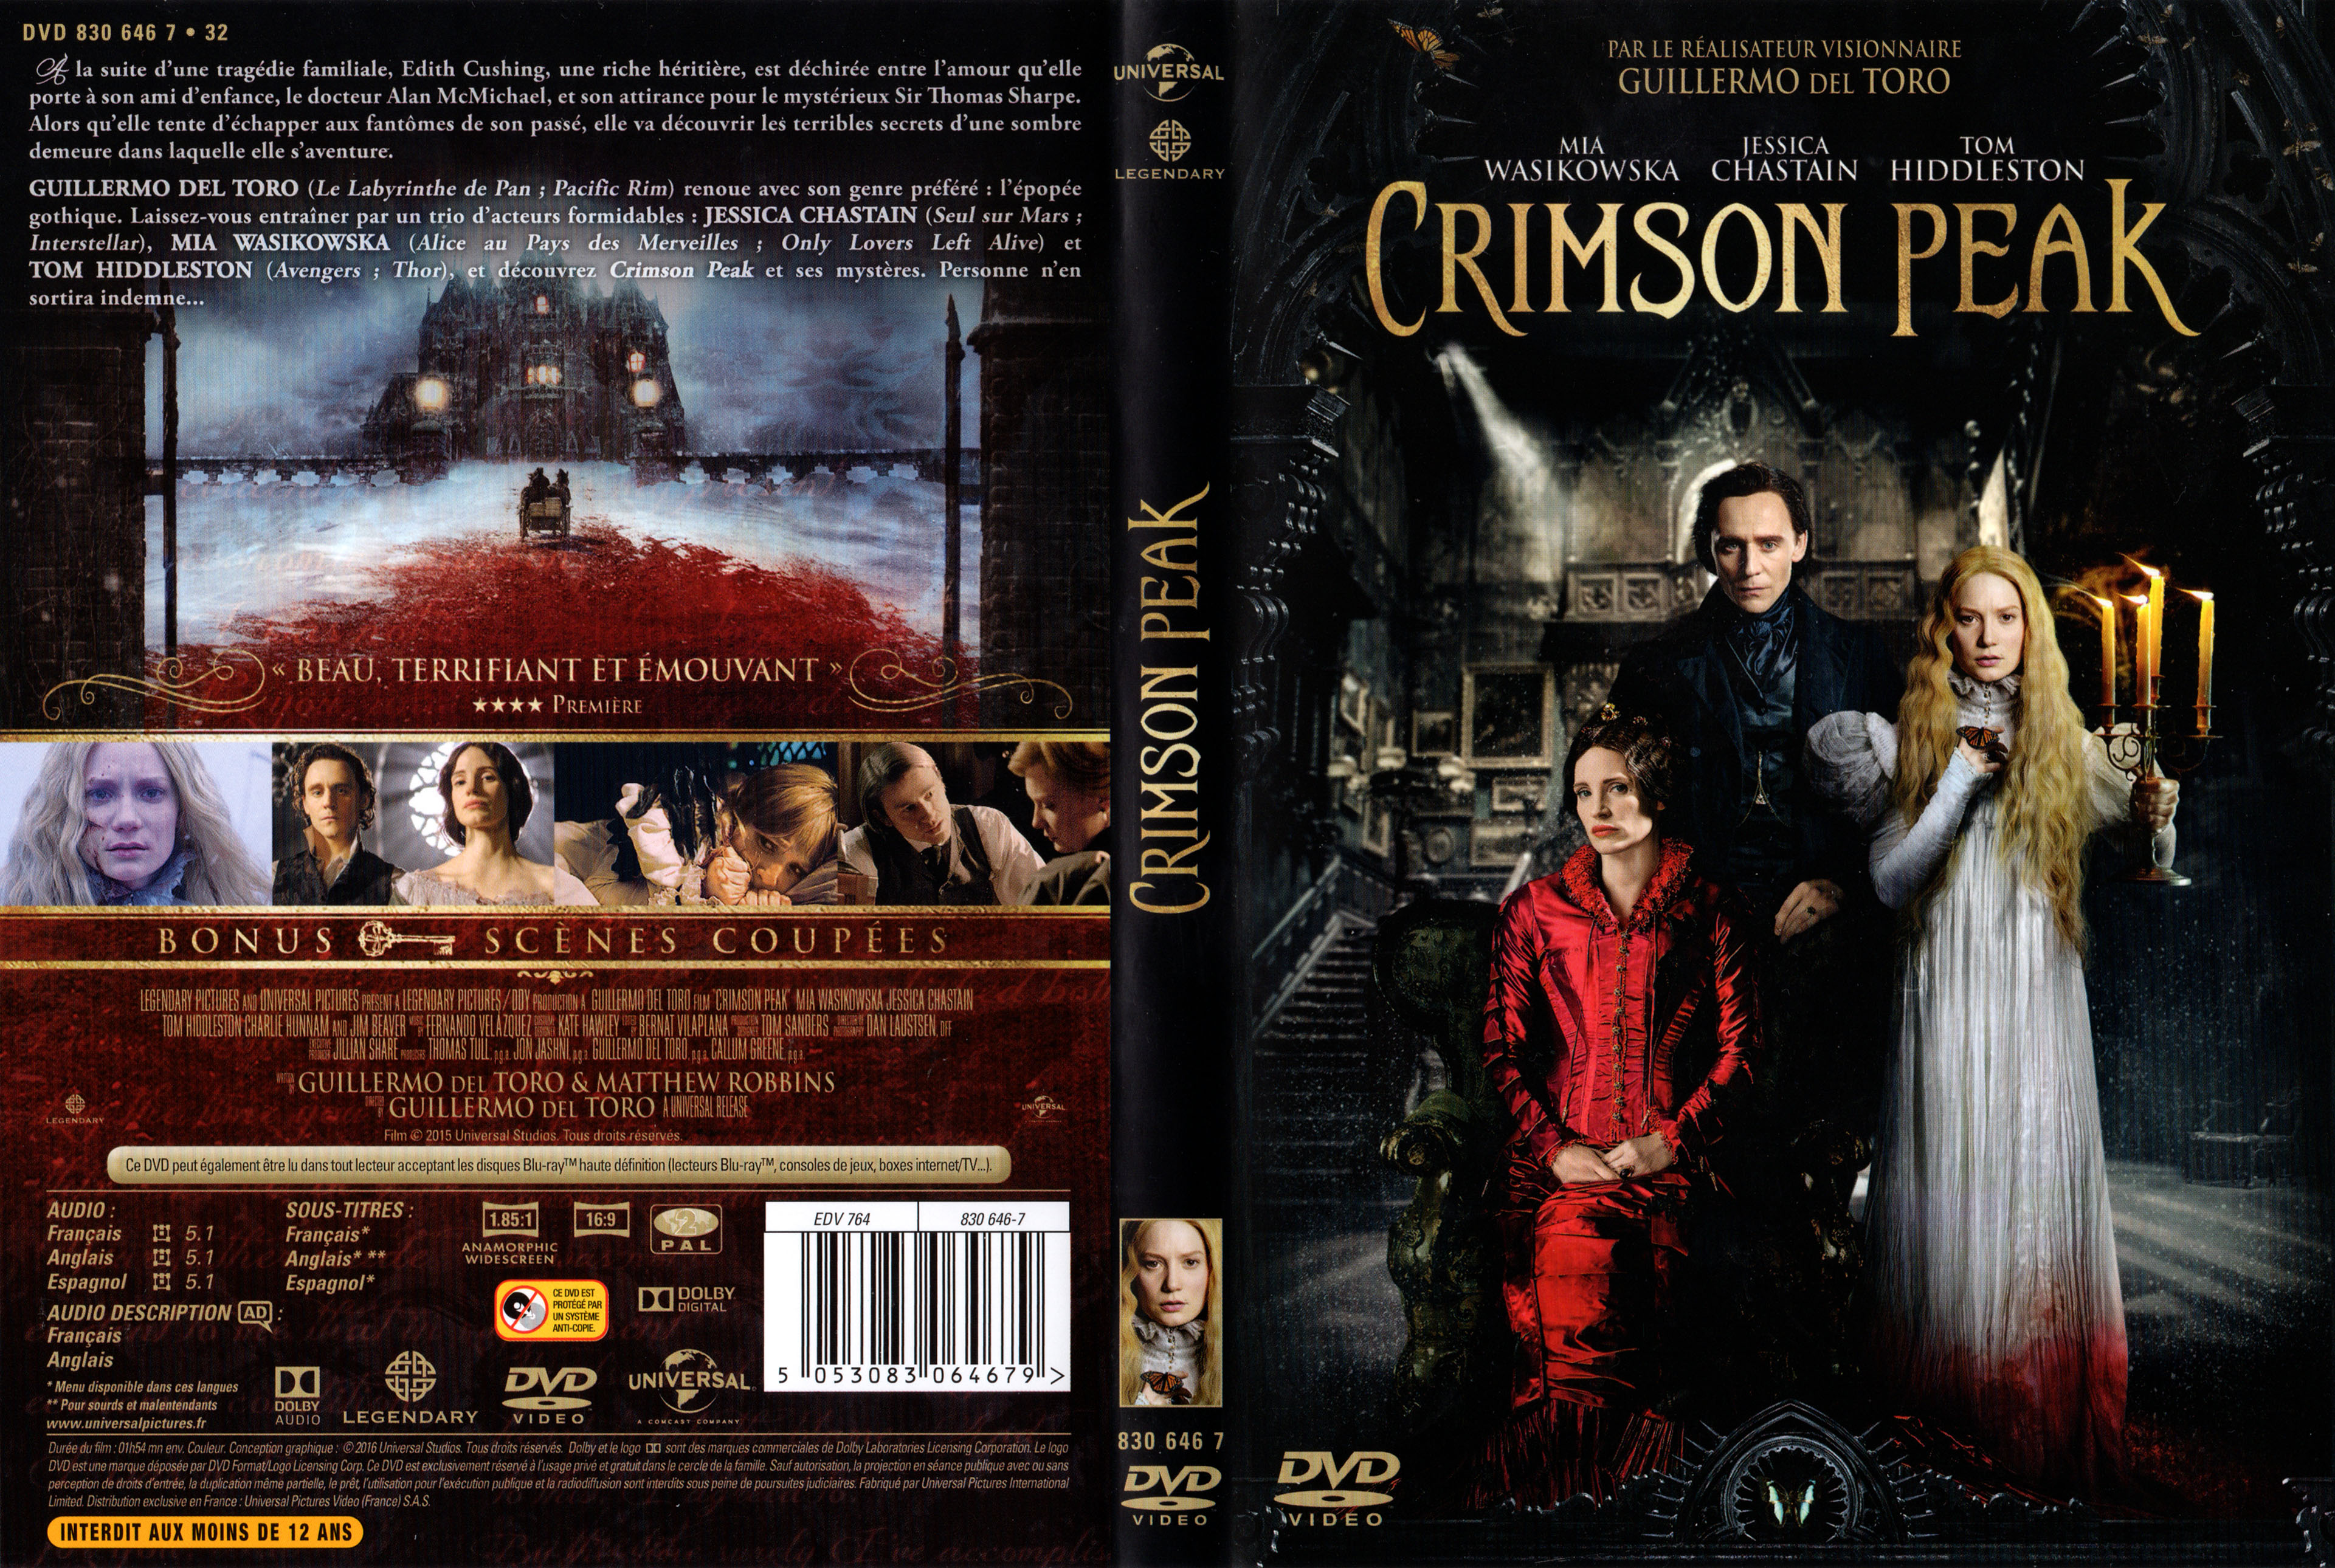 Jaquette DVD Crimson peak